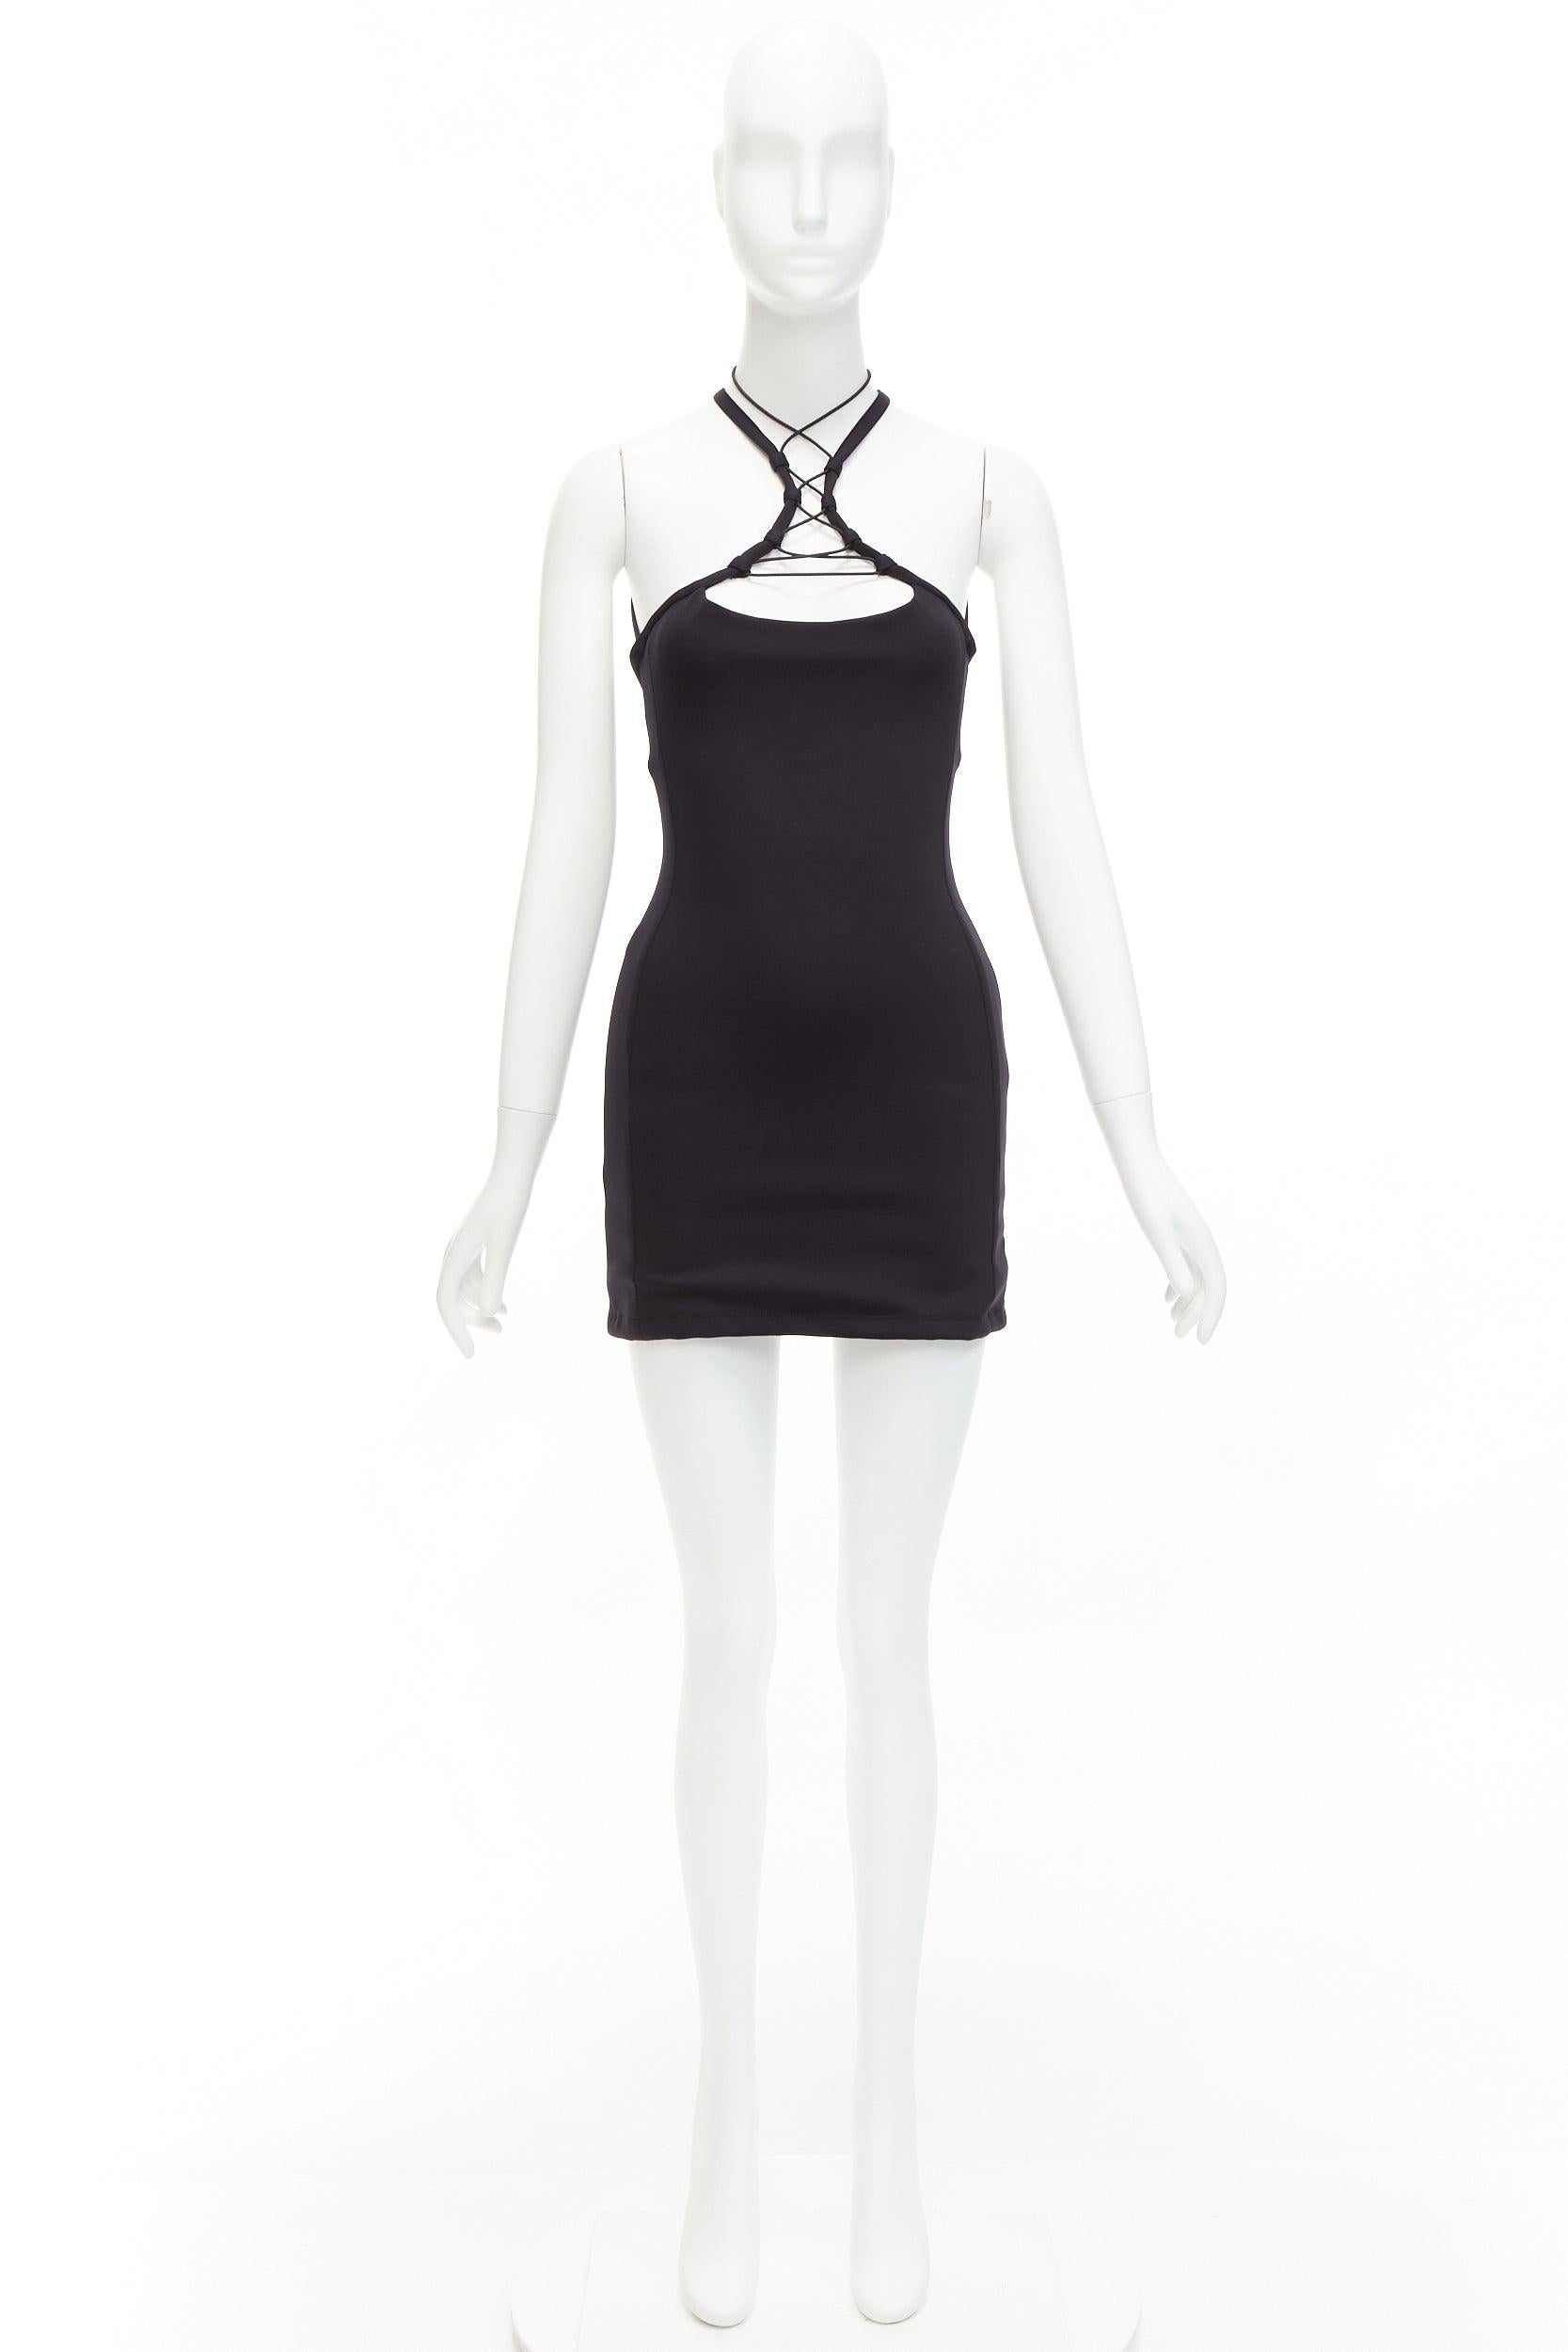 MONSE black jersey white logo back sportif bungee strap halter mini dress XS For Sale 5